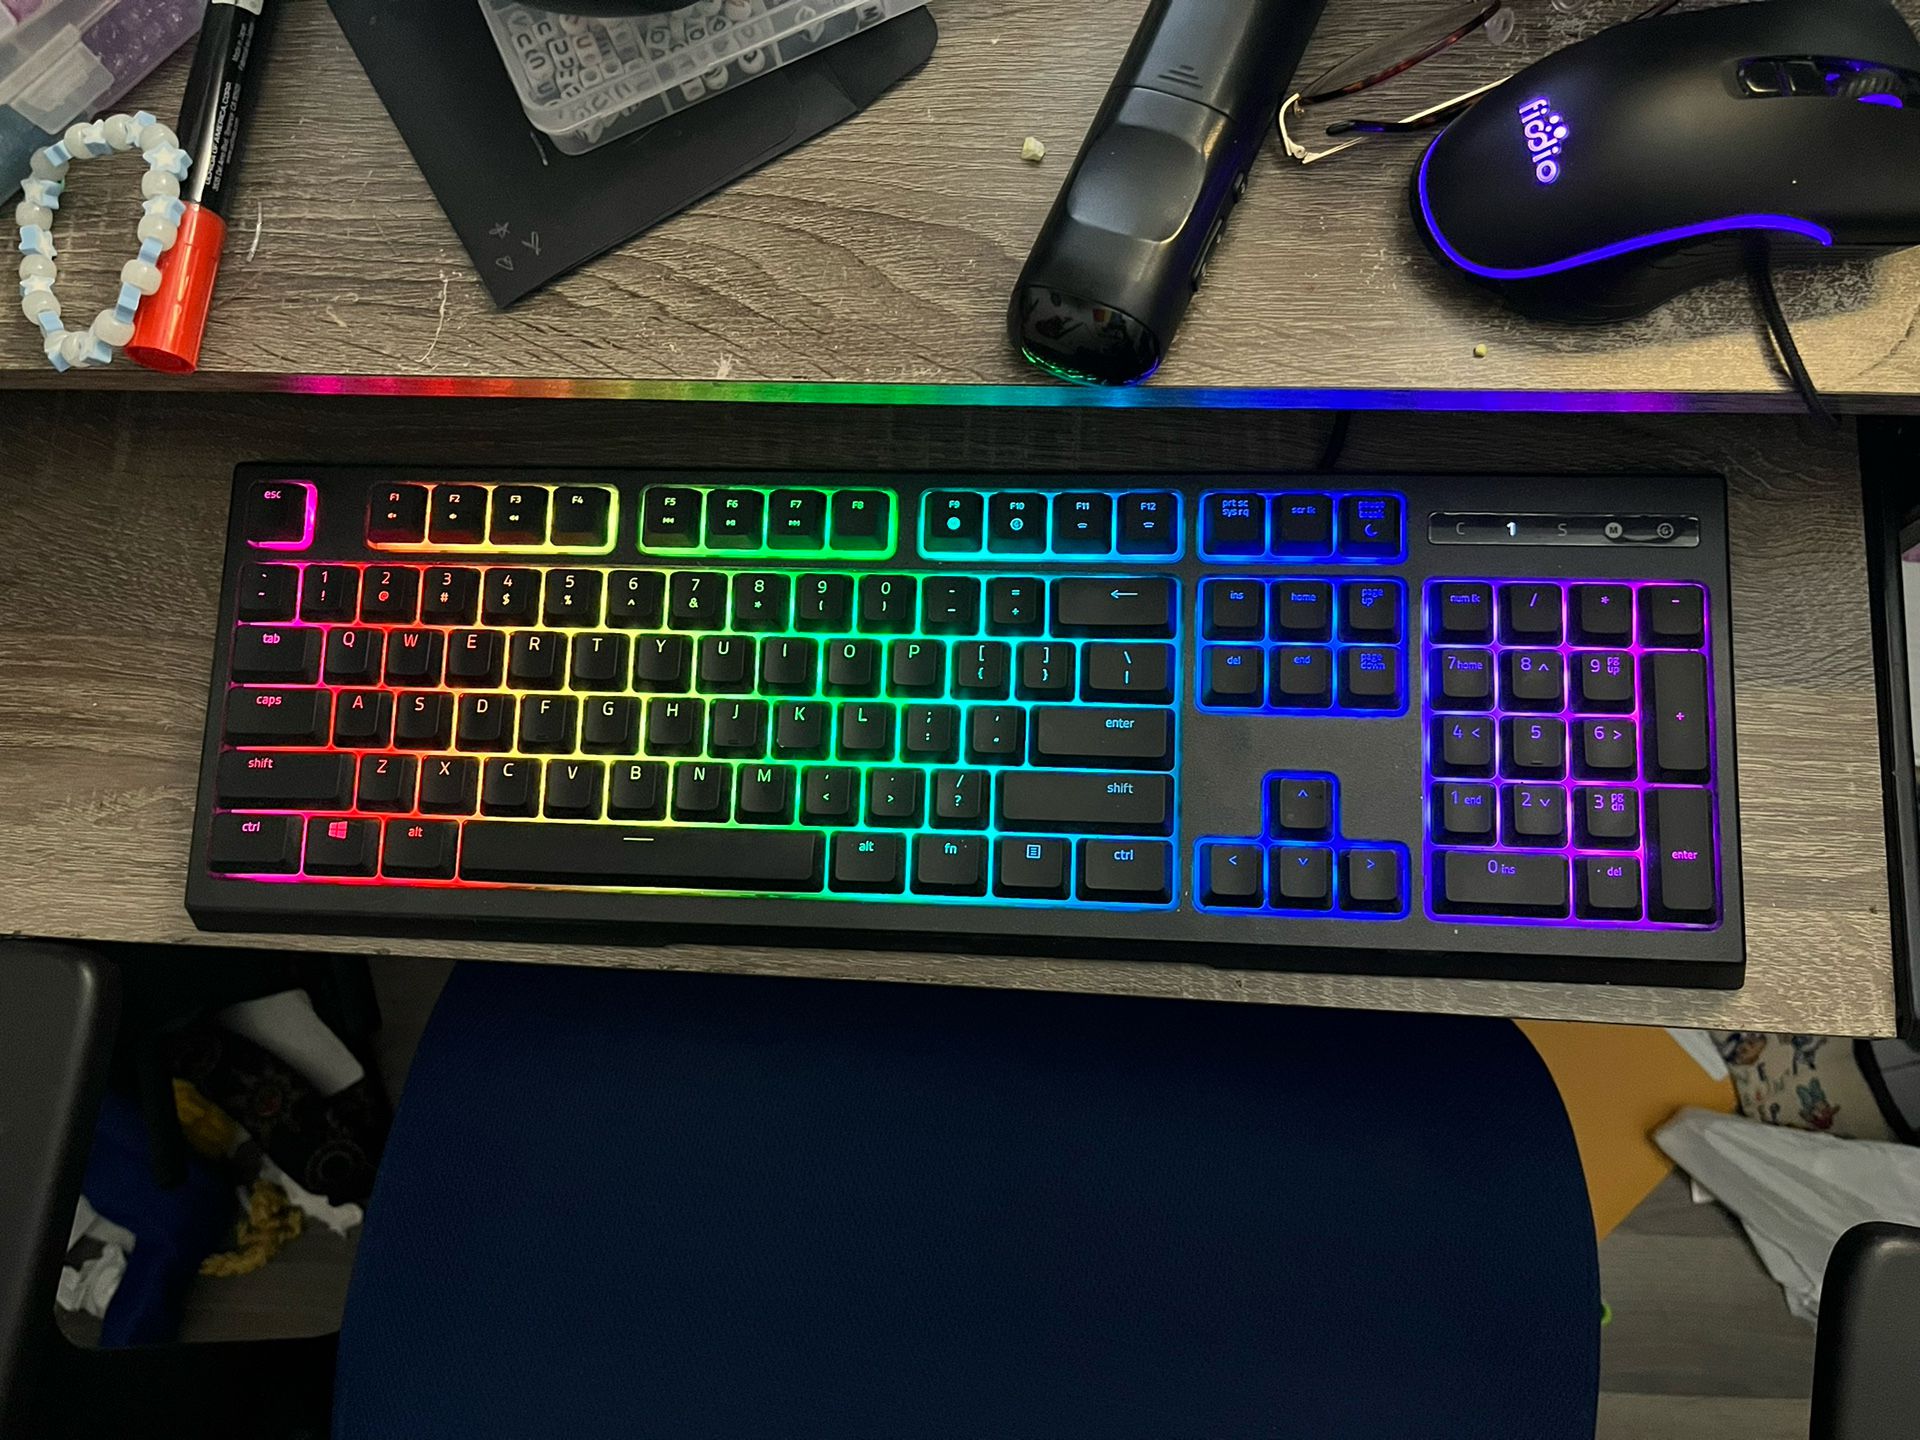 Razer Ornata Chroma Keyboard